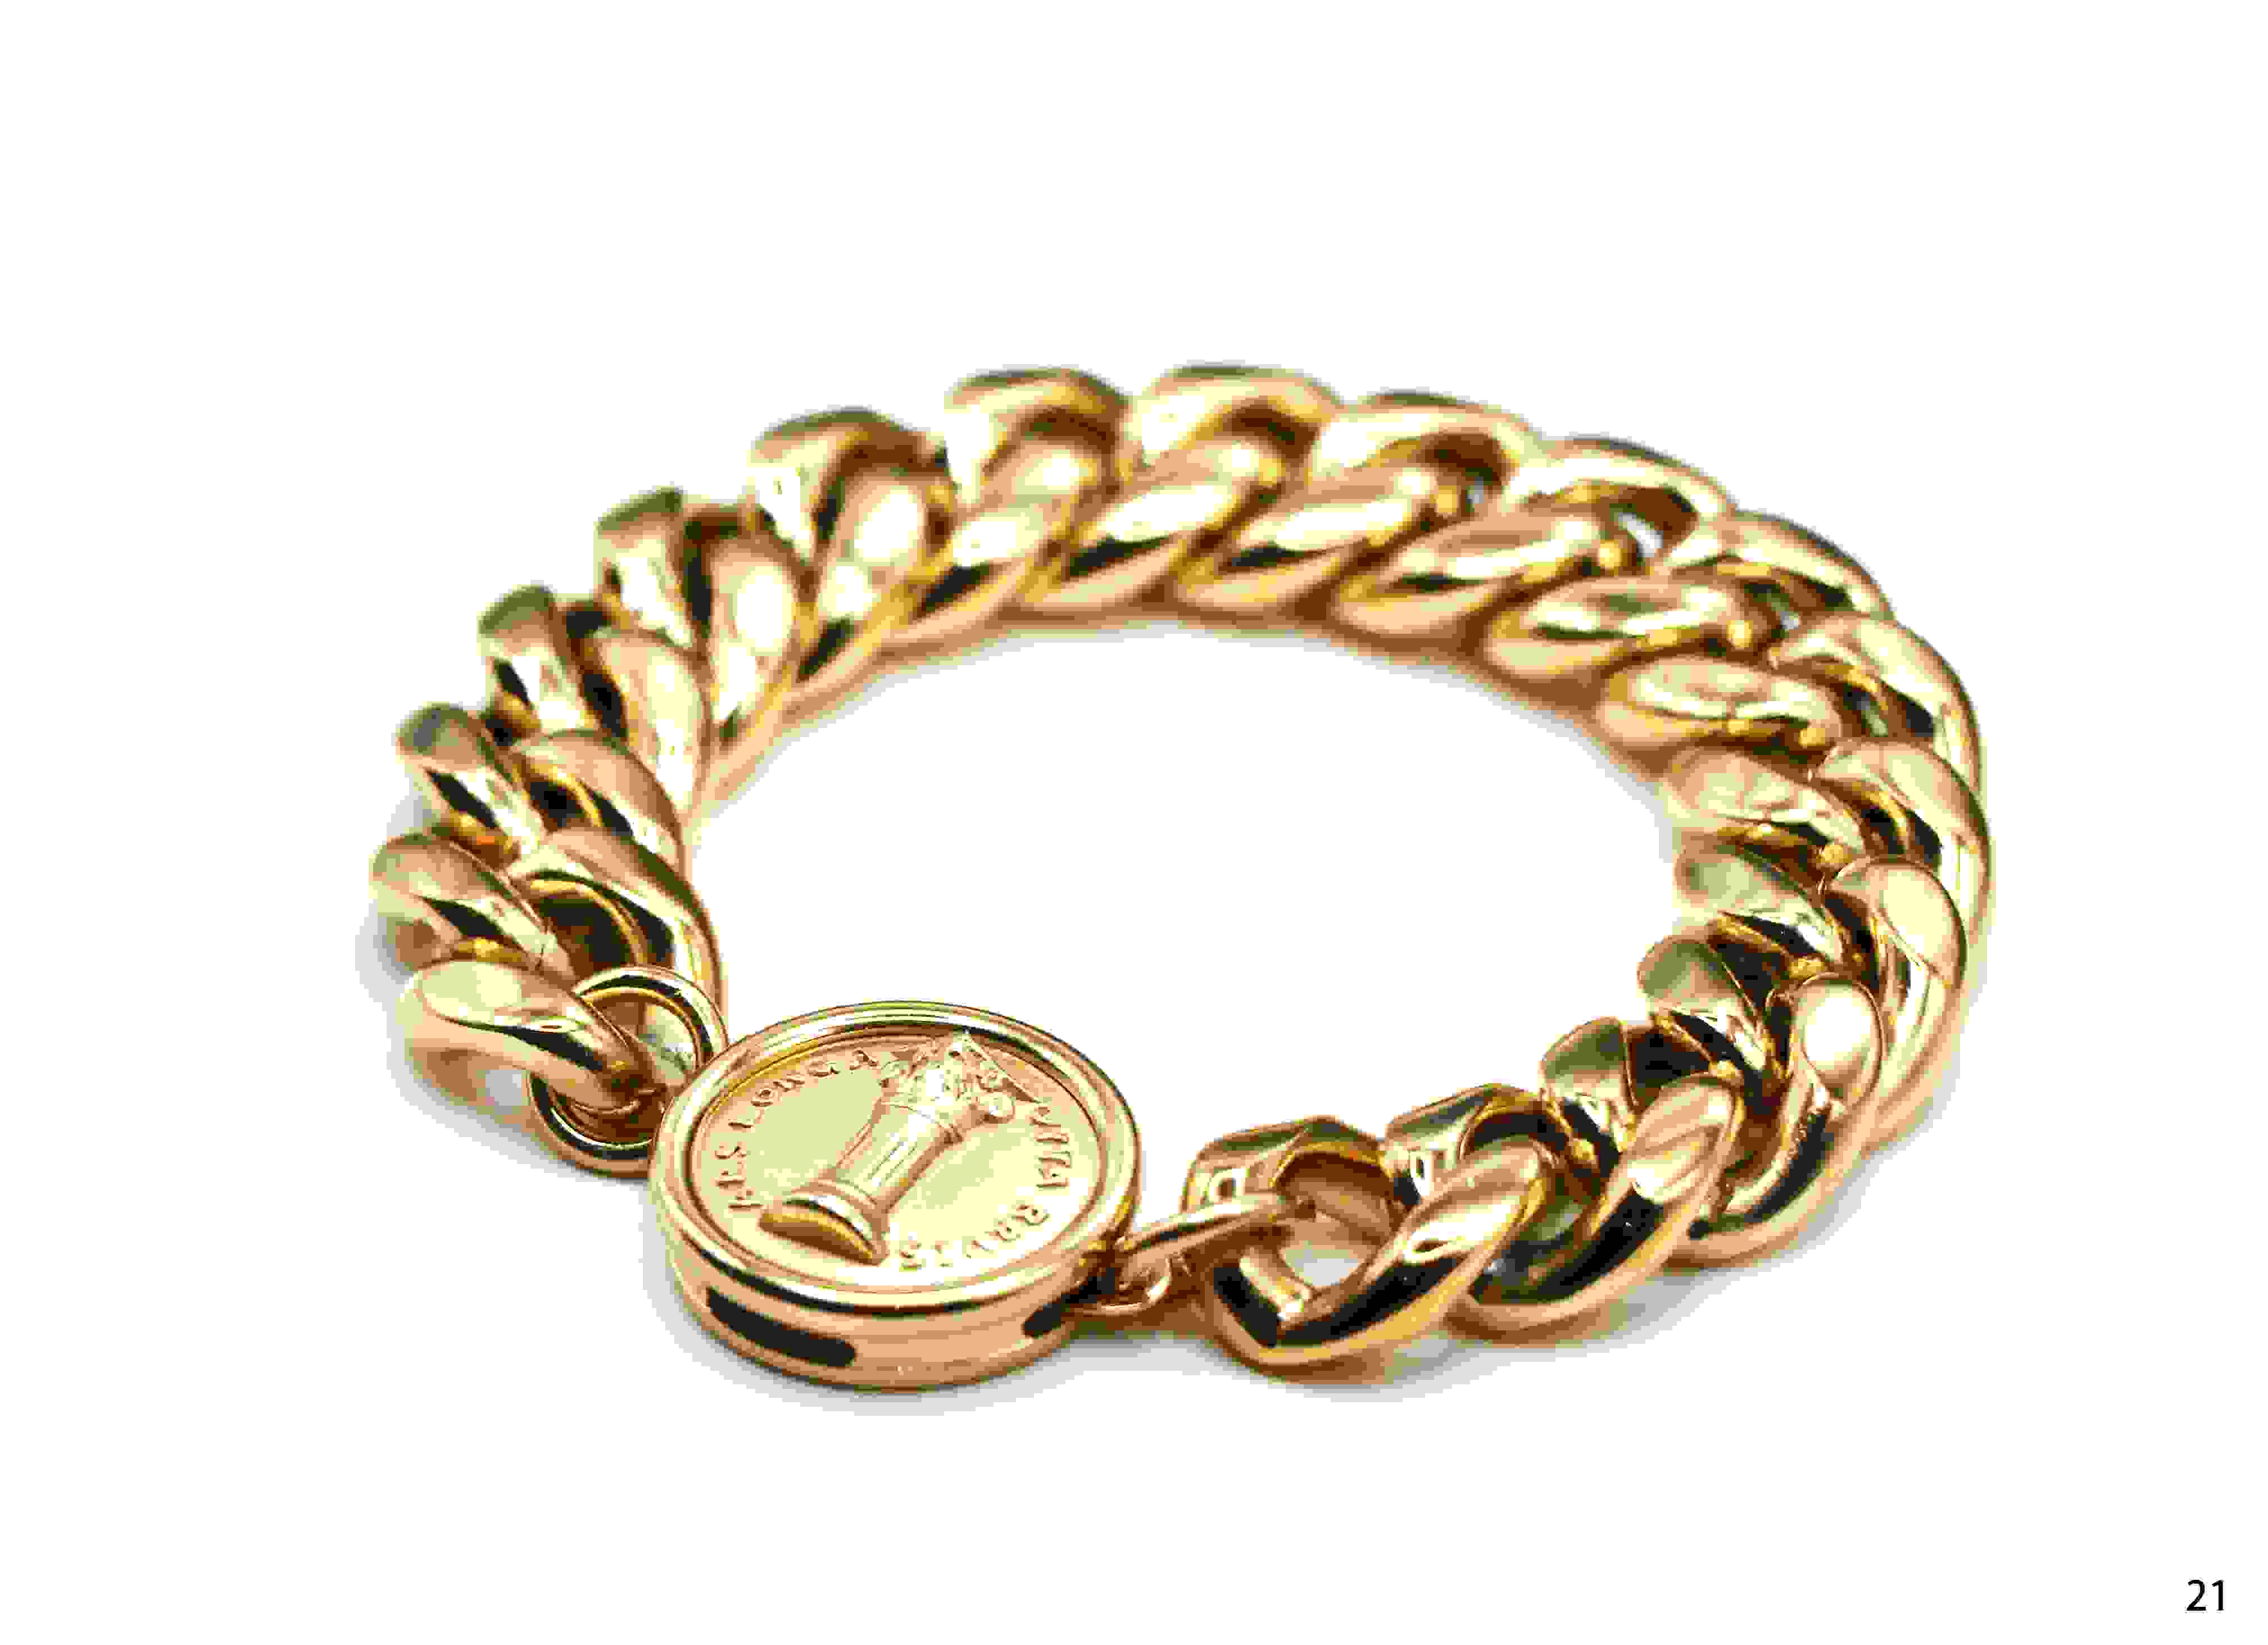 Aurei 14k Gold Plated Curb Bracelet 21cm